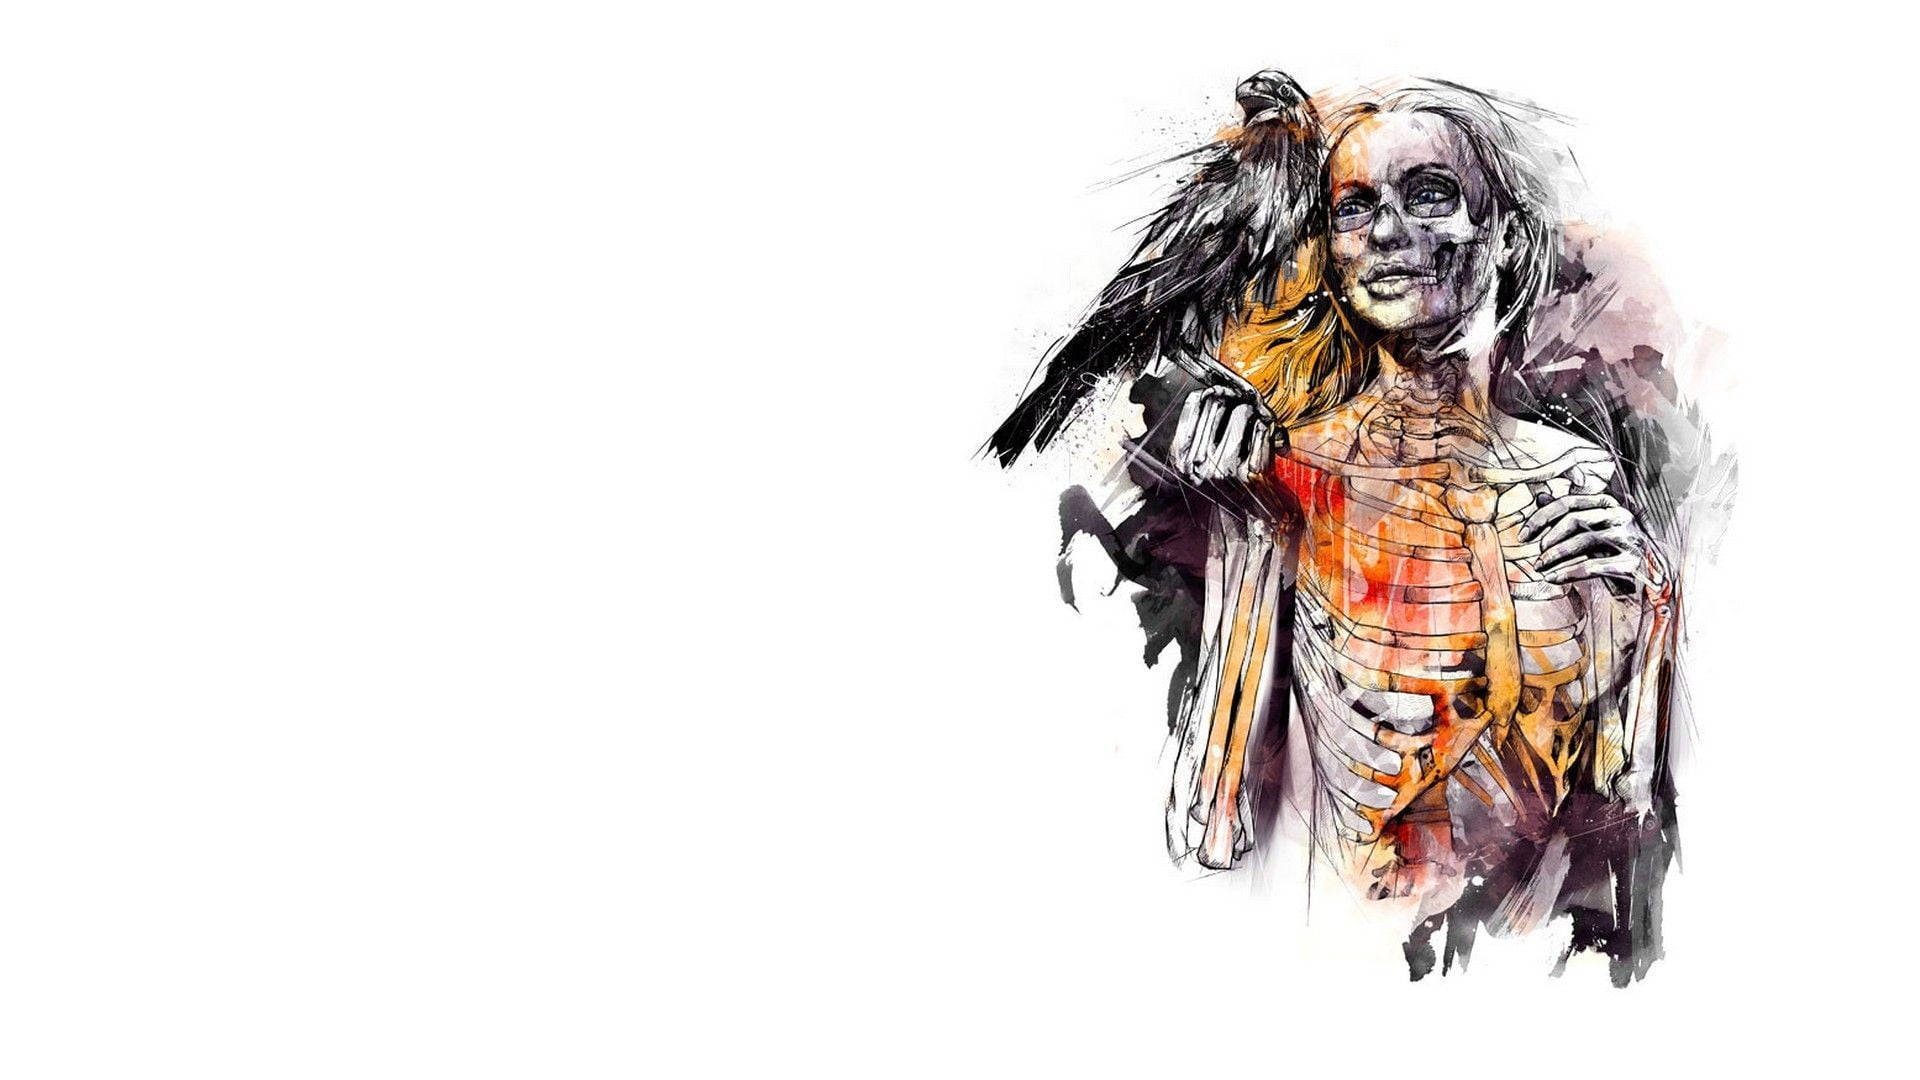 Bird With A Woman's Skeleton Mobile Wallpaper: Fågel Med En Kvinnas Skelett Som Mobilbakgrund Wallpaper